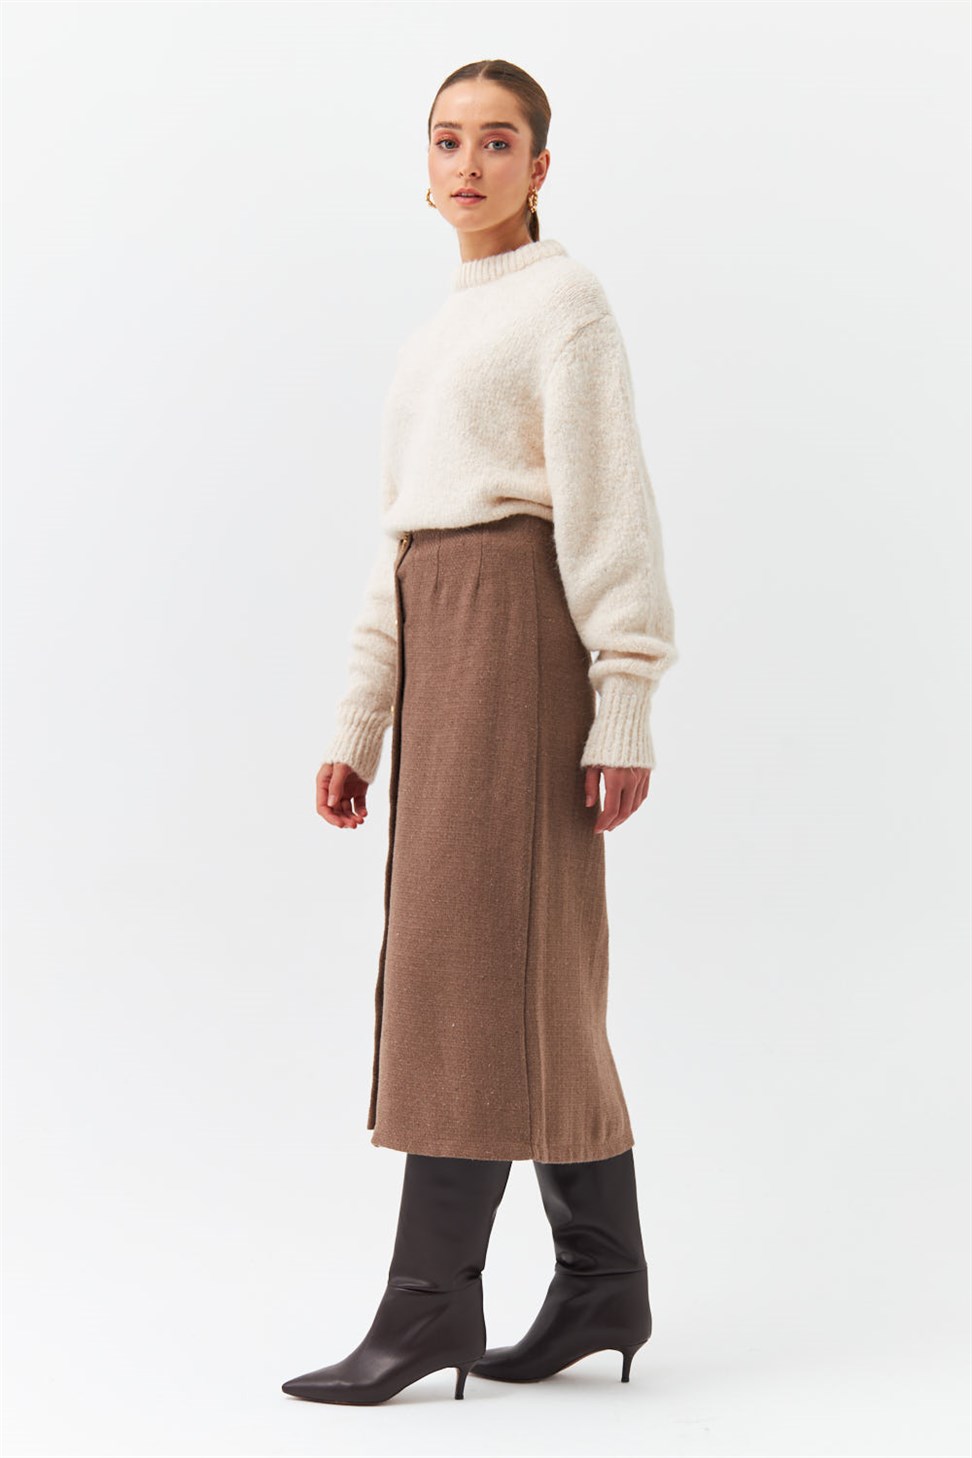 Modest Textured Brown Pencil Skirt